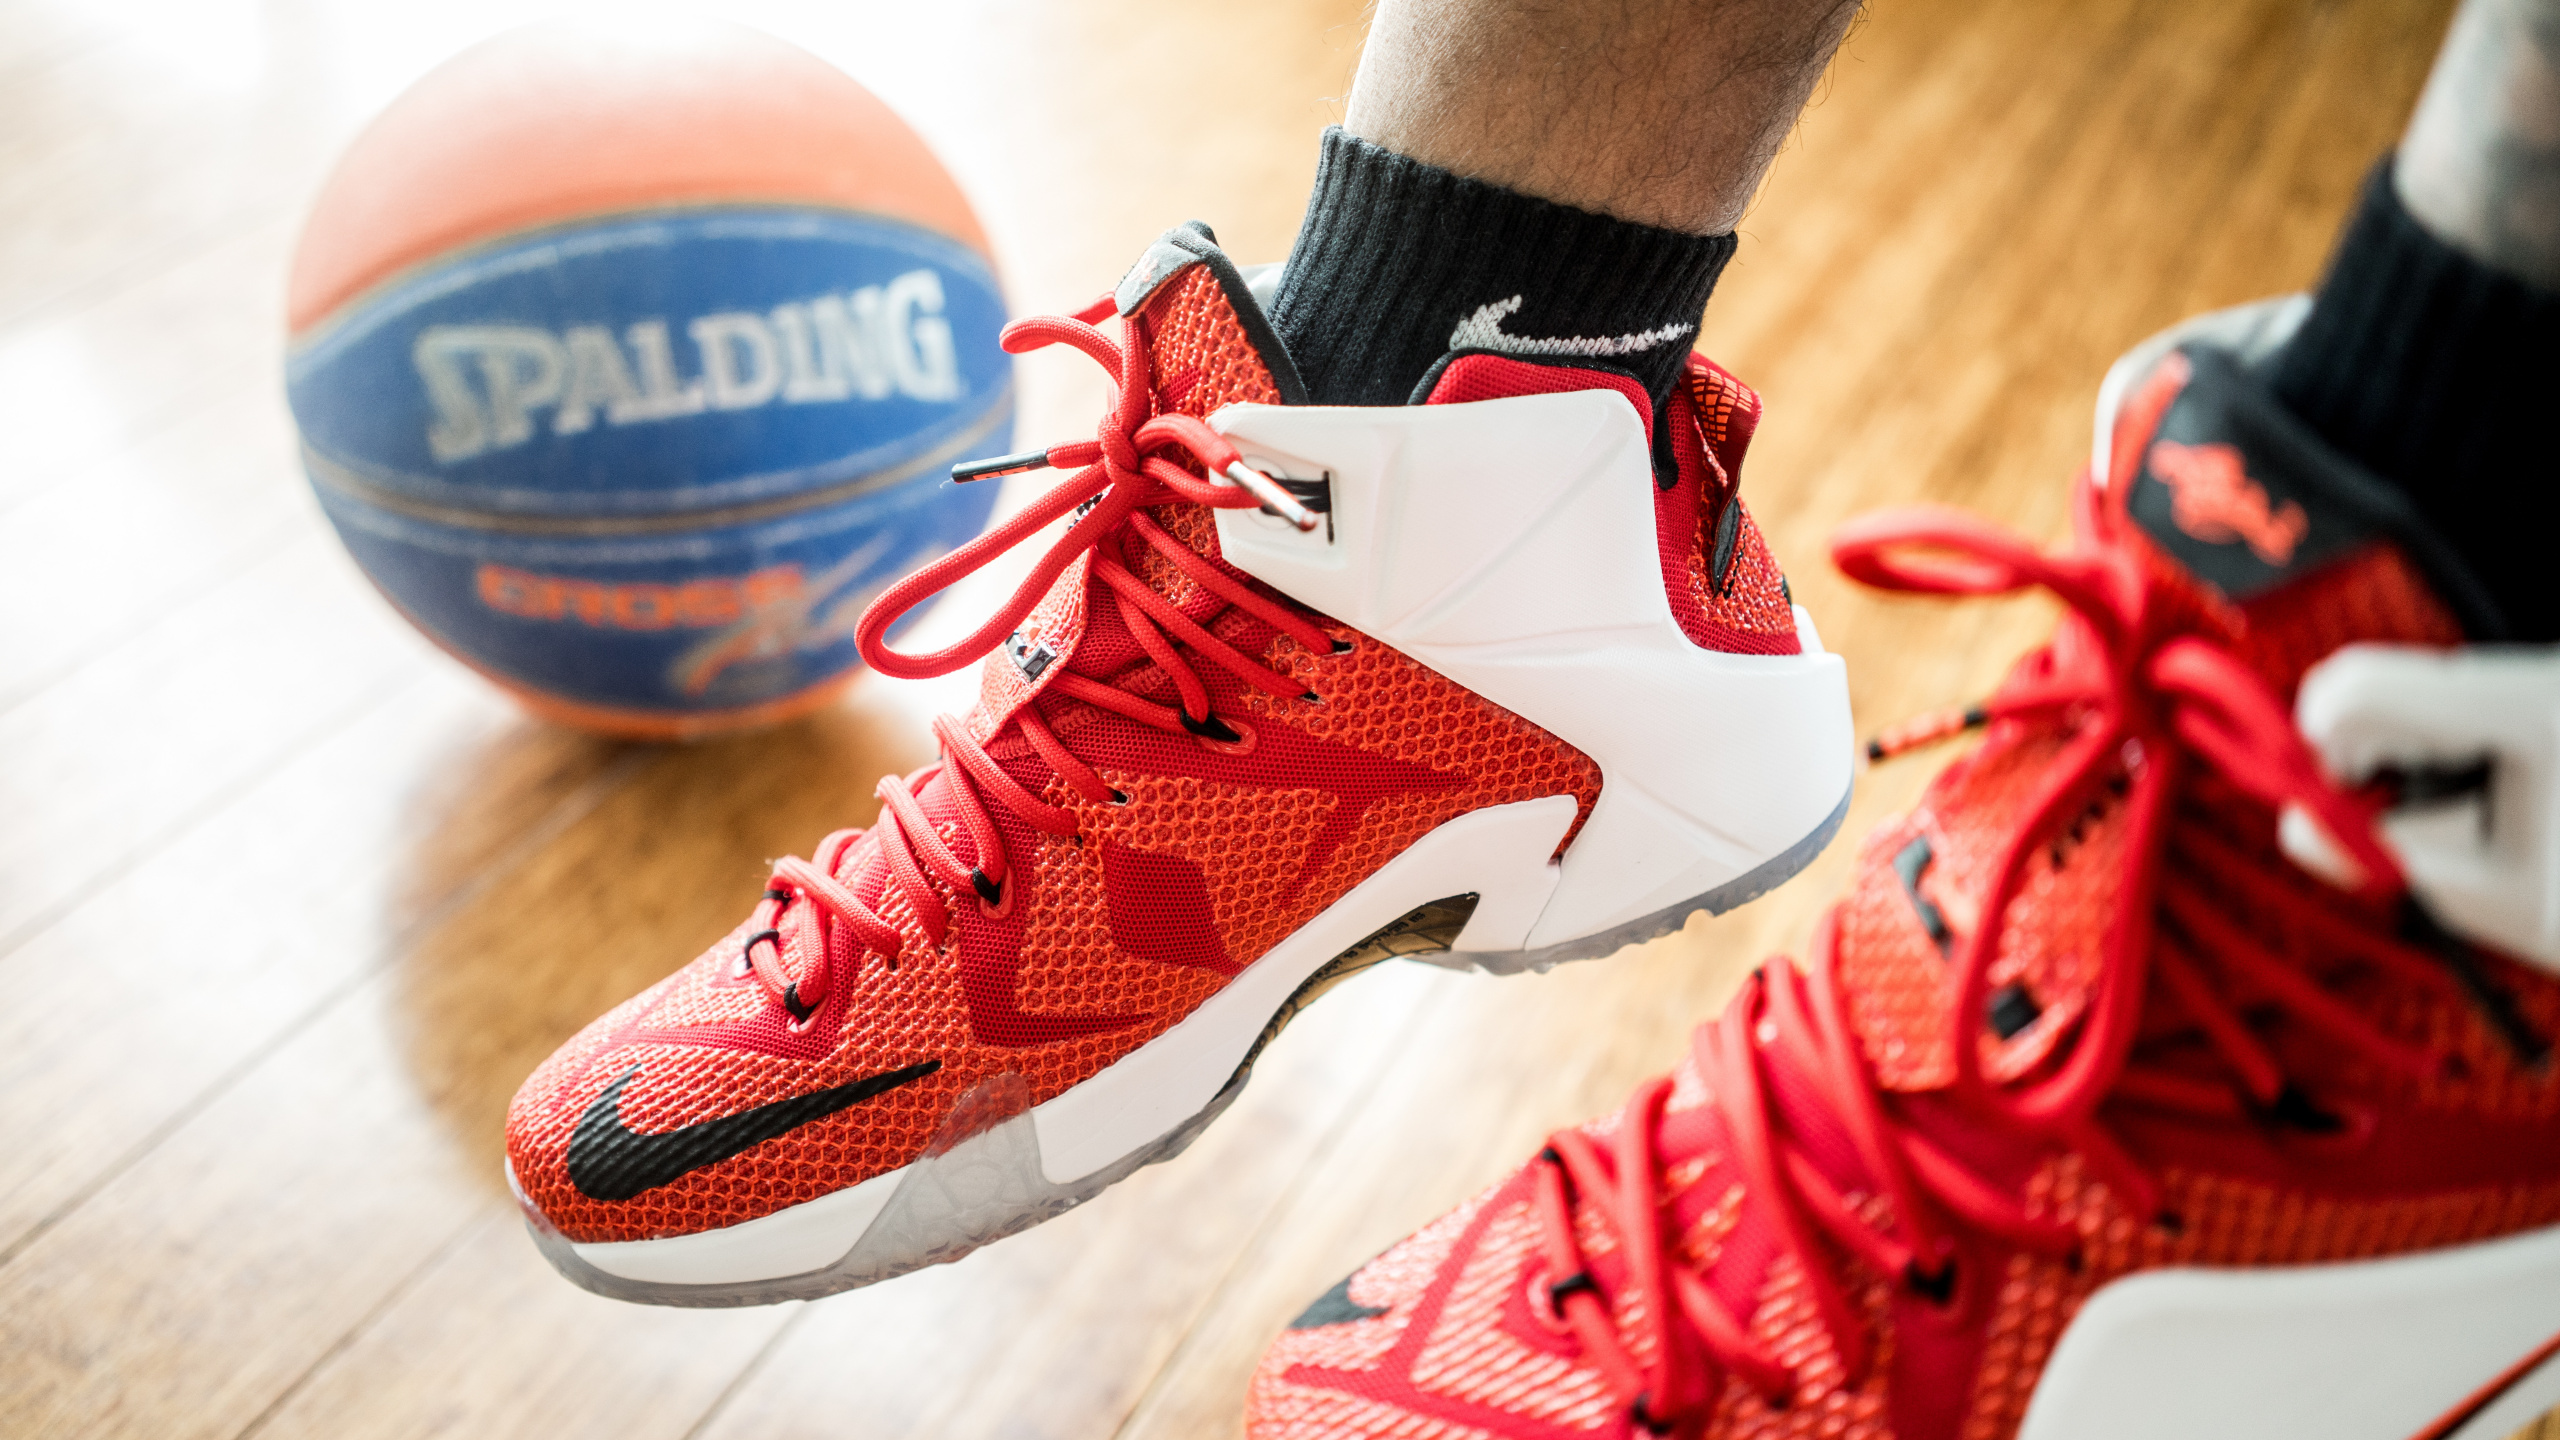 篮球鞋, 篮球, 白色, 红色的, 橙色 壁纸 2560x1440 允许